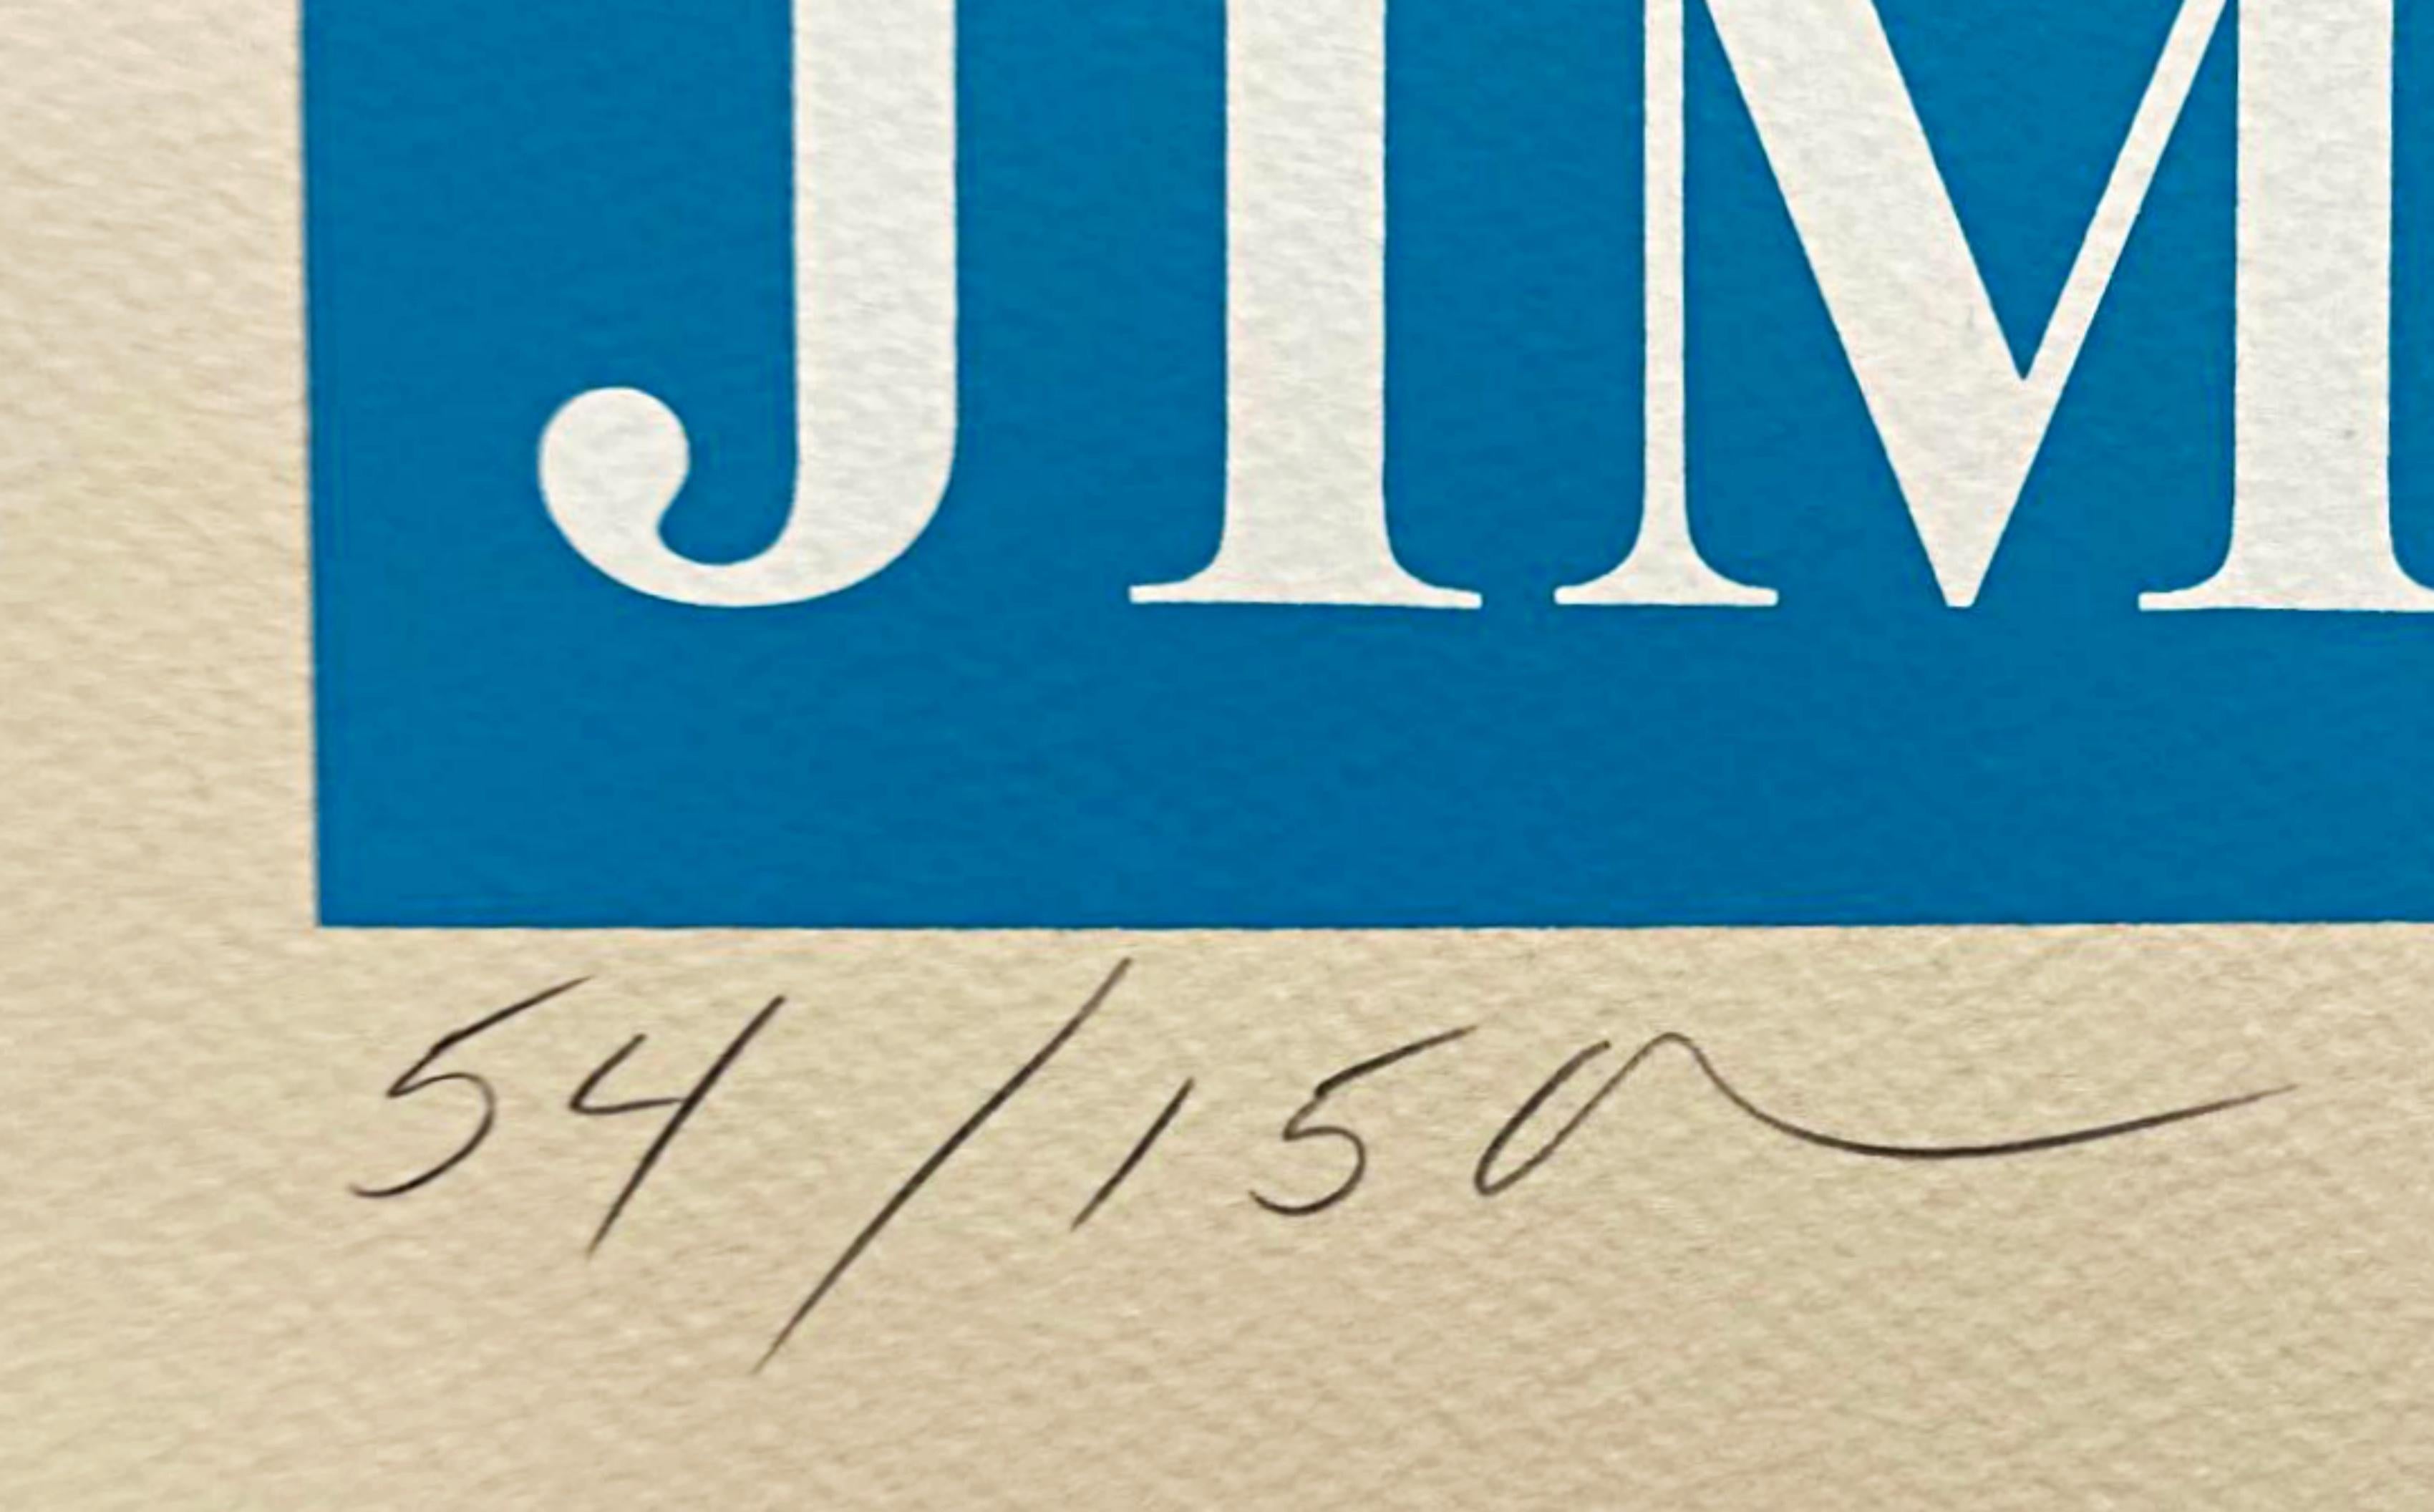 Robert Indiana
Un homme honnête a été président : Hommage à Jimmy Carter (Sheehan, 112), 1980
Sérigraphie couleur sur papier vélin écru
23 1/2 × 19 3/5 pouces
Signé au crayon et numéroté au recto (54/150)
Publié par le Democratic National Committee,